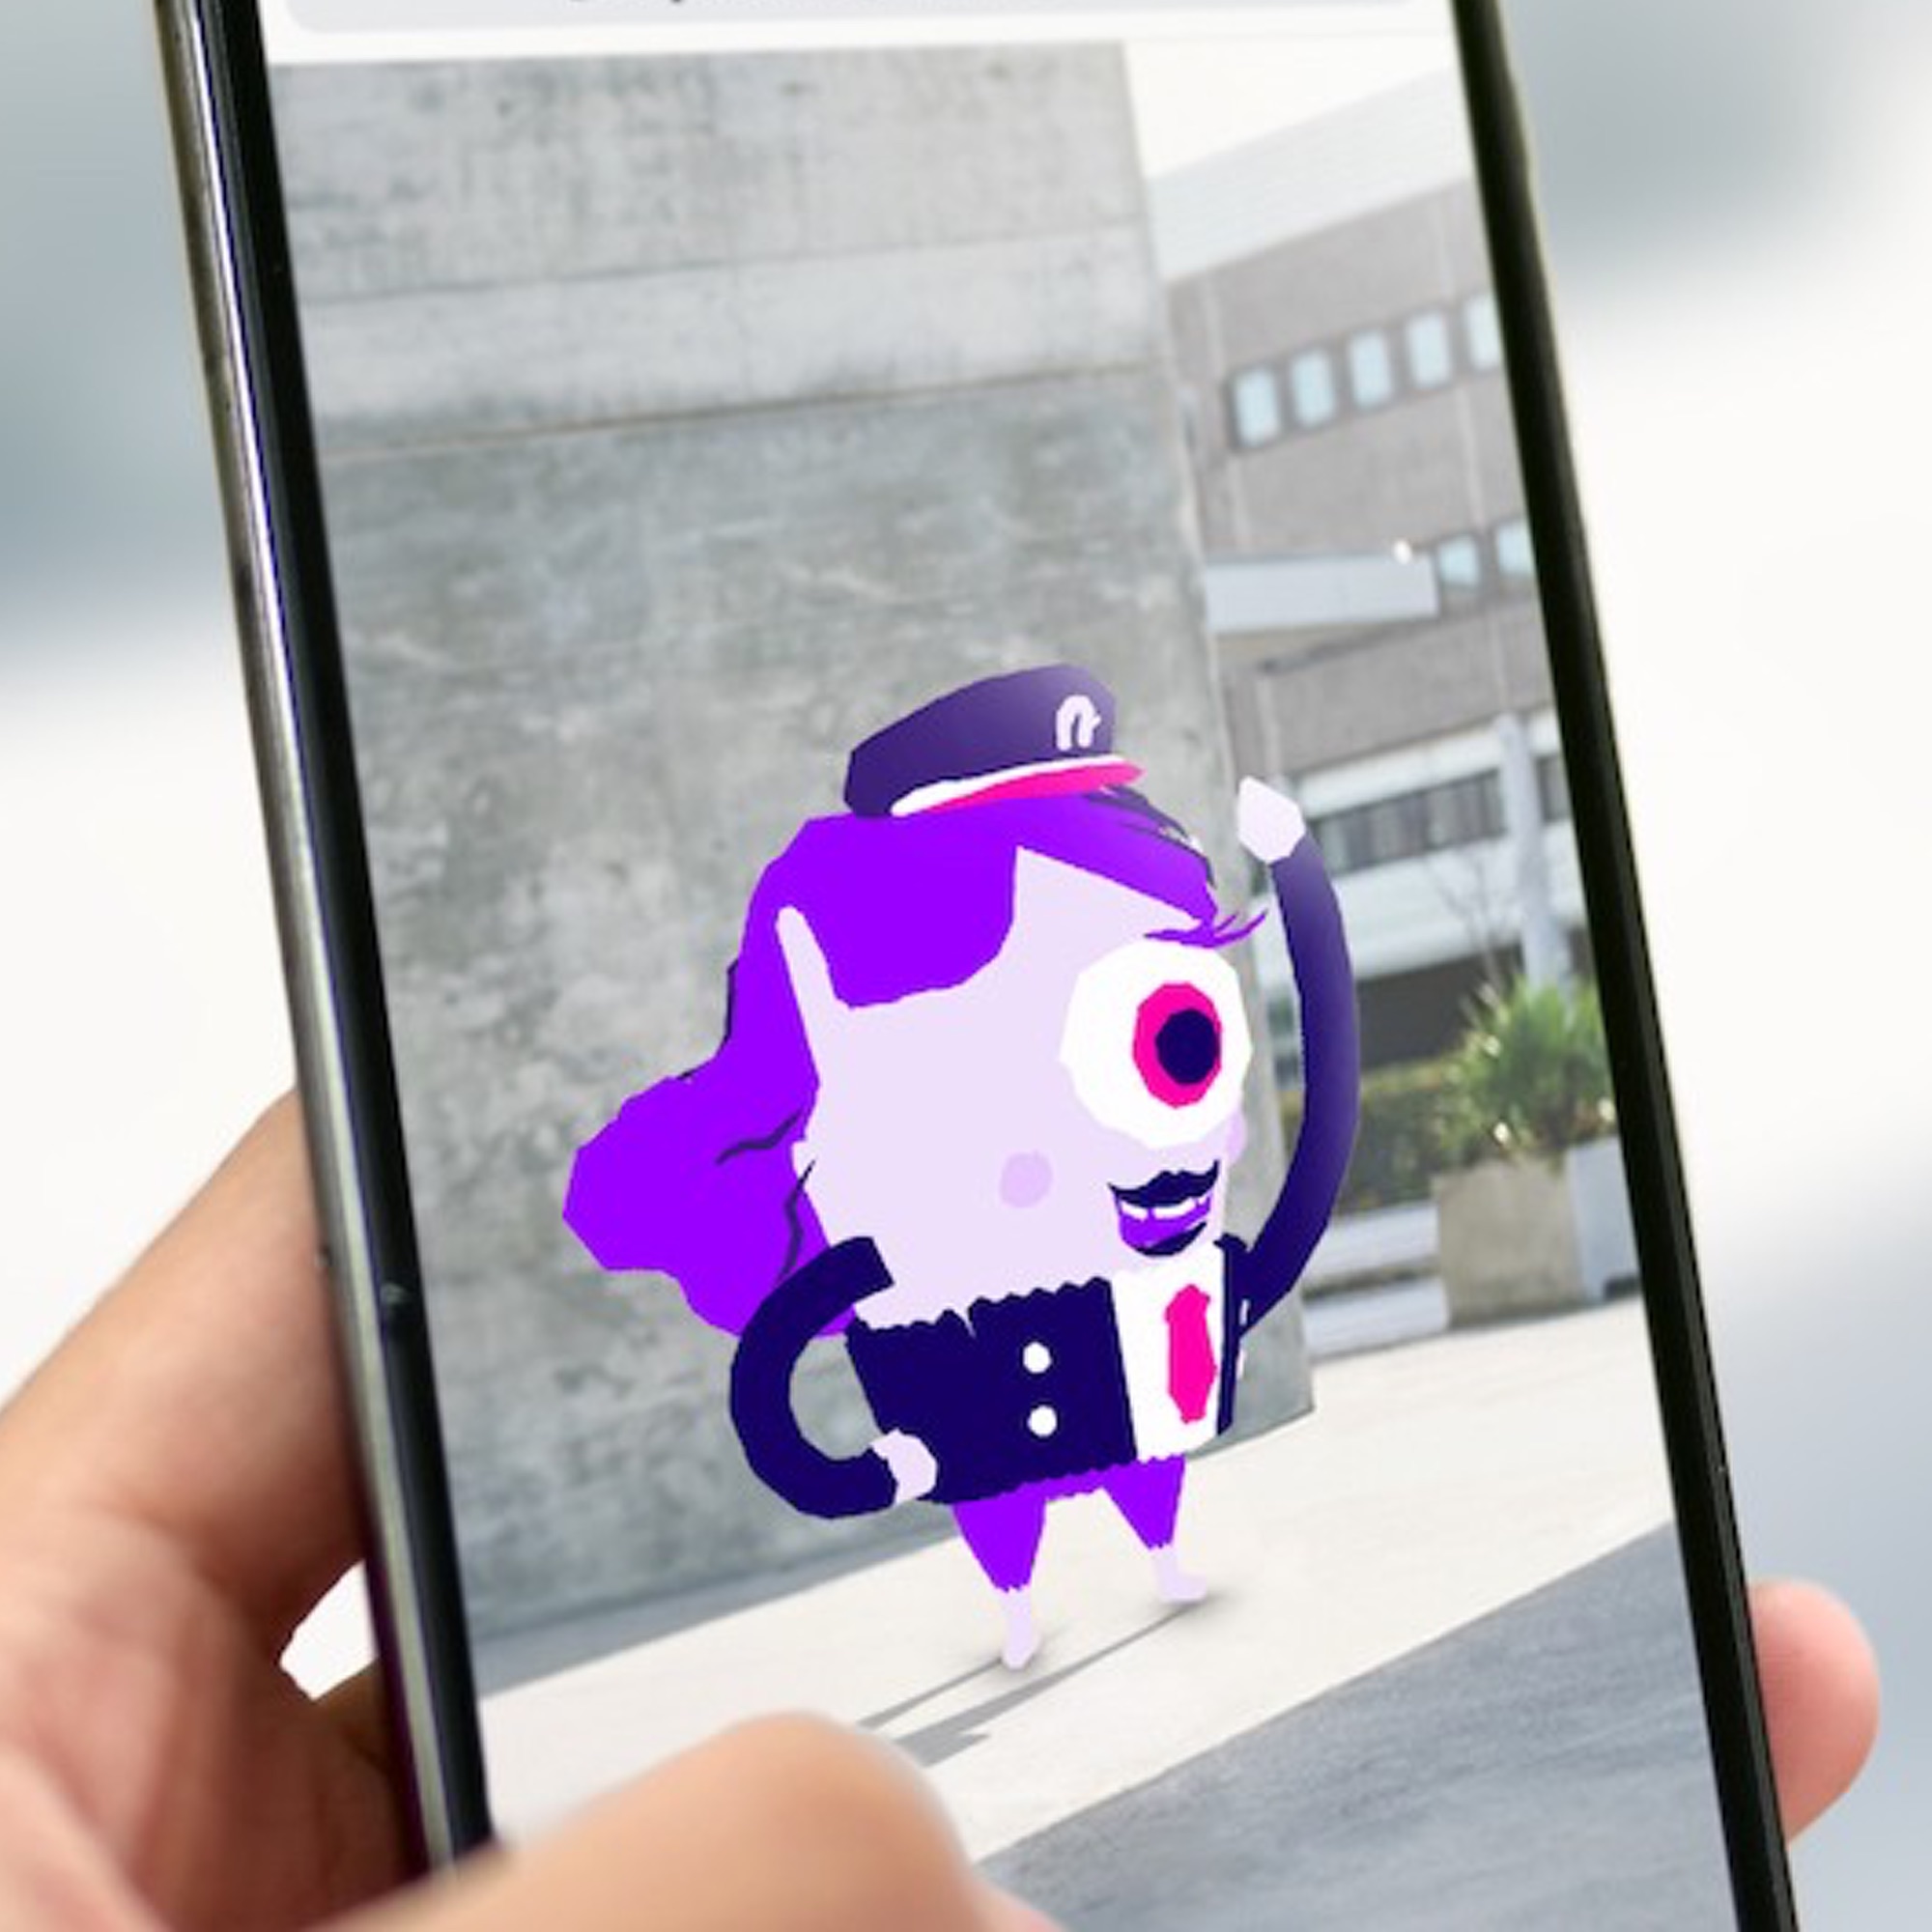 ARGOplay ex-SnapPress la solution de réalité augmentée native pour le secteur public, disponible gratuitement pour les utilisateurs finaux sur smartphones iOS et Android, aperçu d'un magazine de l'Agglomération de Roanne et d'augmentation sur un écran de smartphone